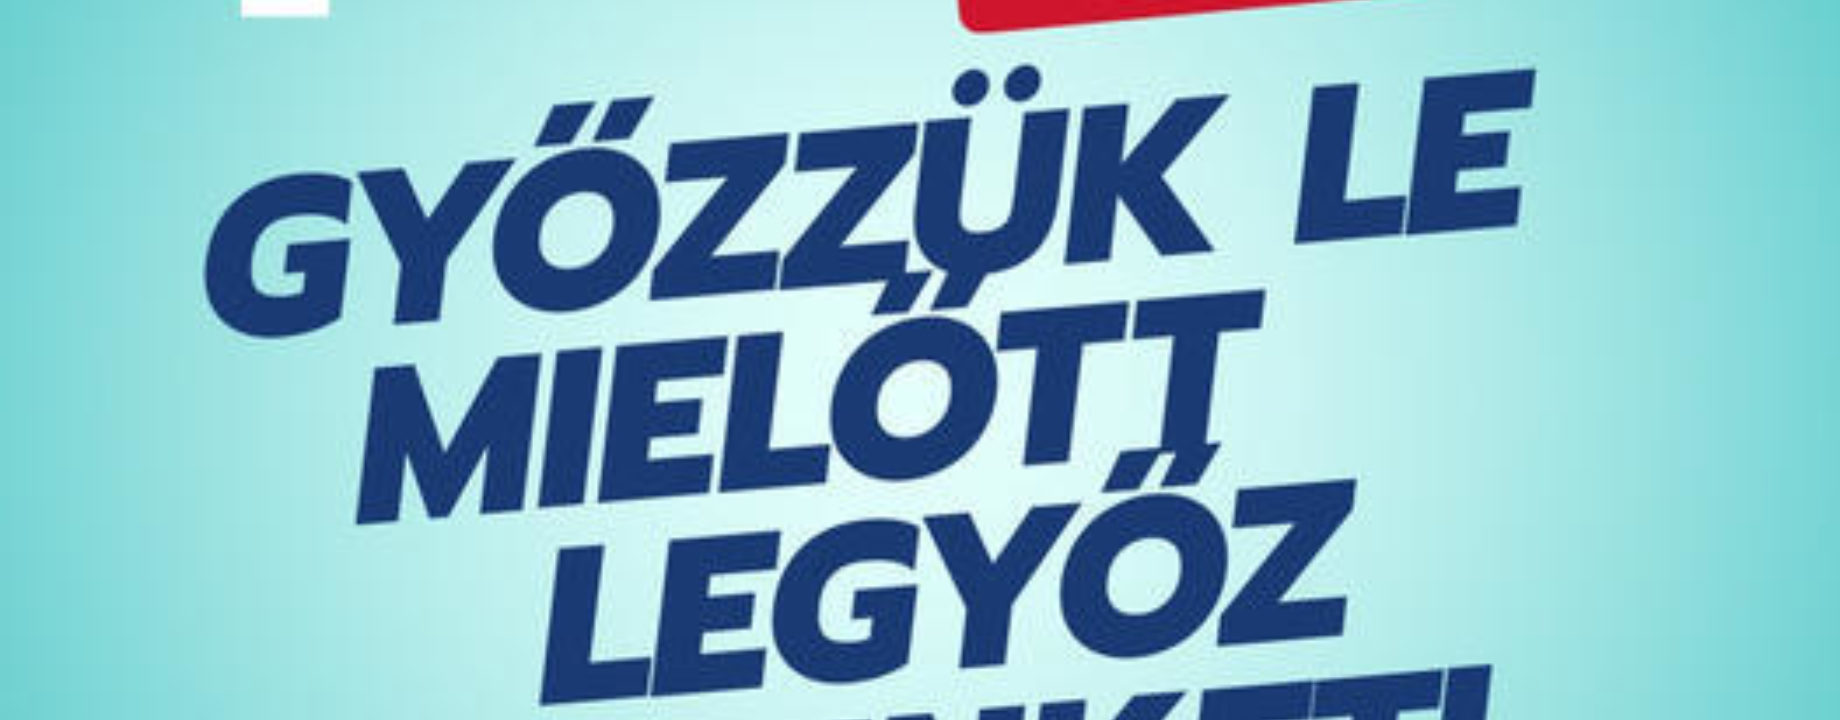 oltásplakát szlovák magyar